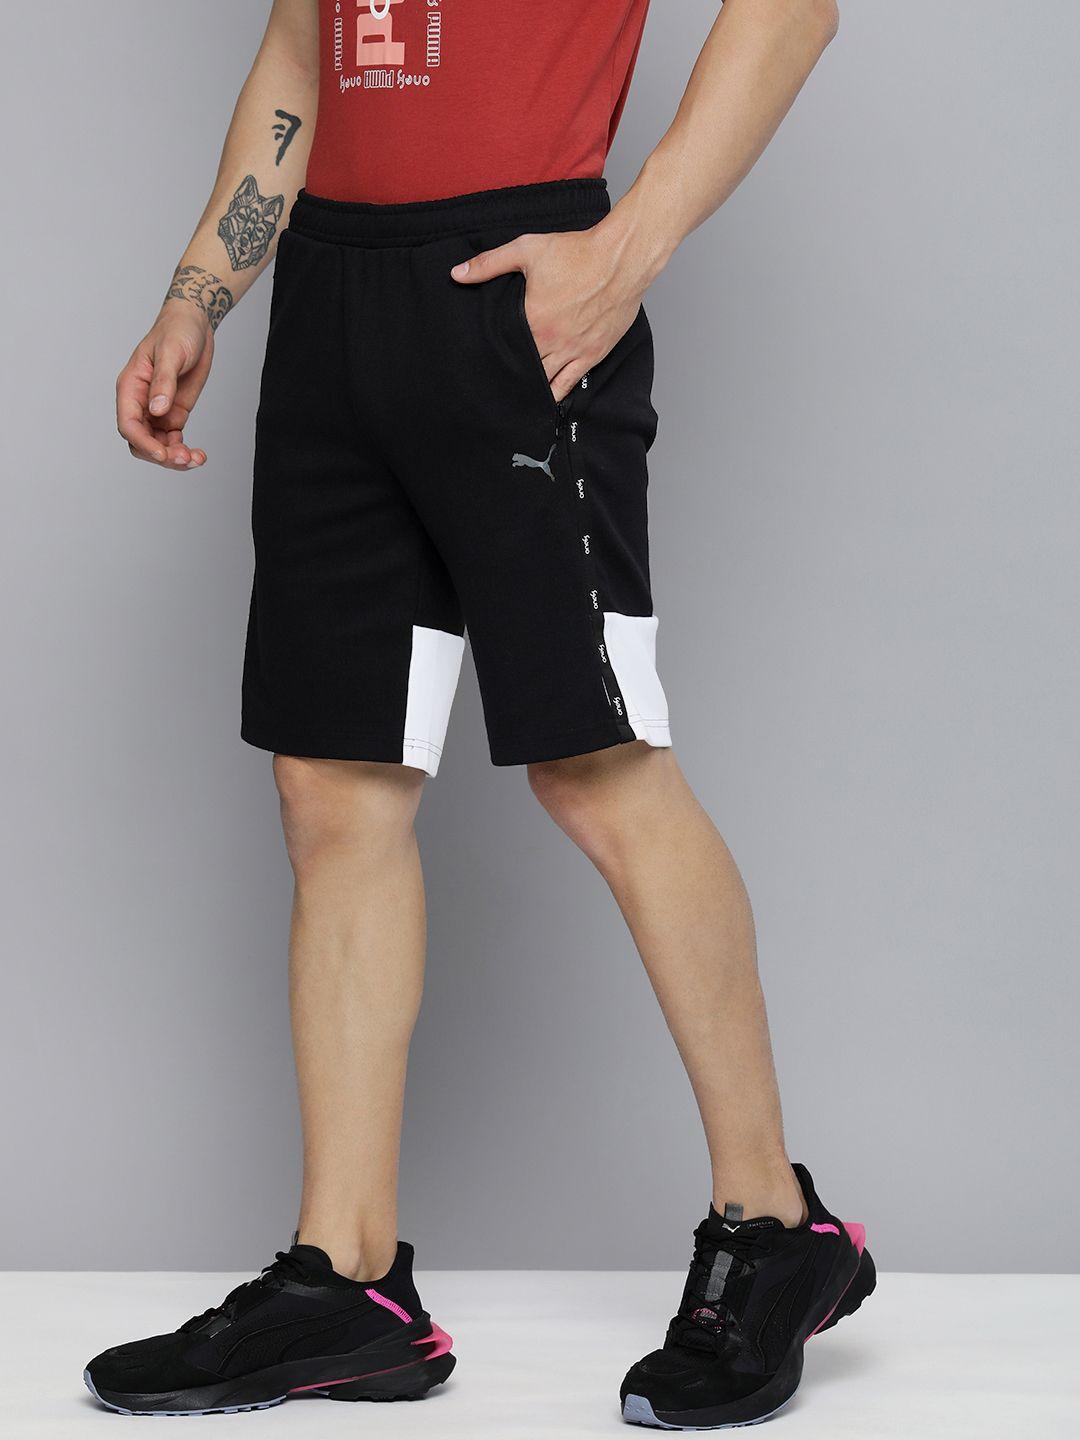 one8-x-puma-men-black-&-white-colourblocked-slim-fit-virat-kohli-sports-shorts